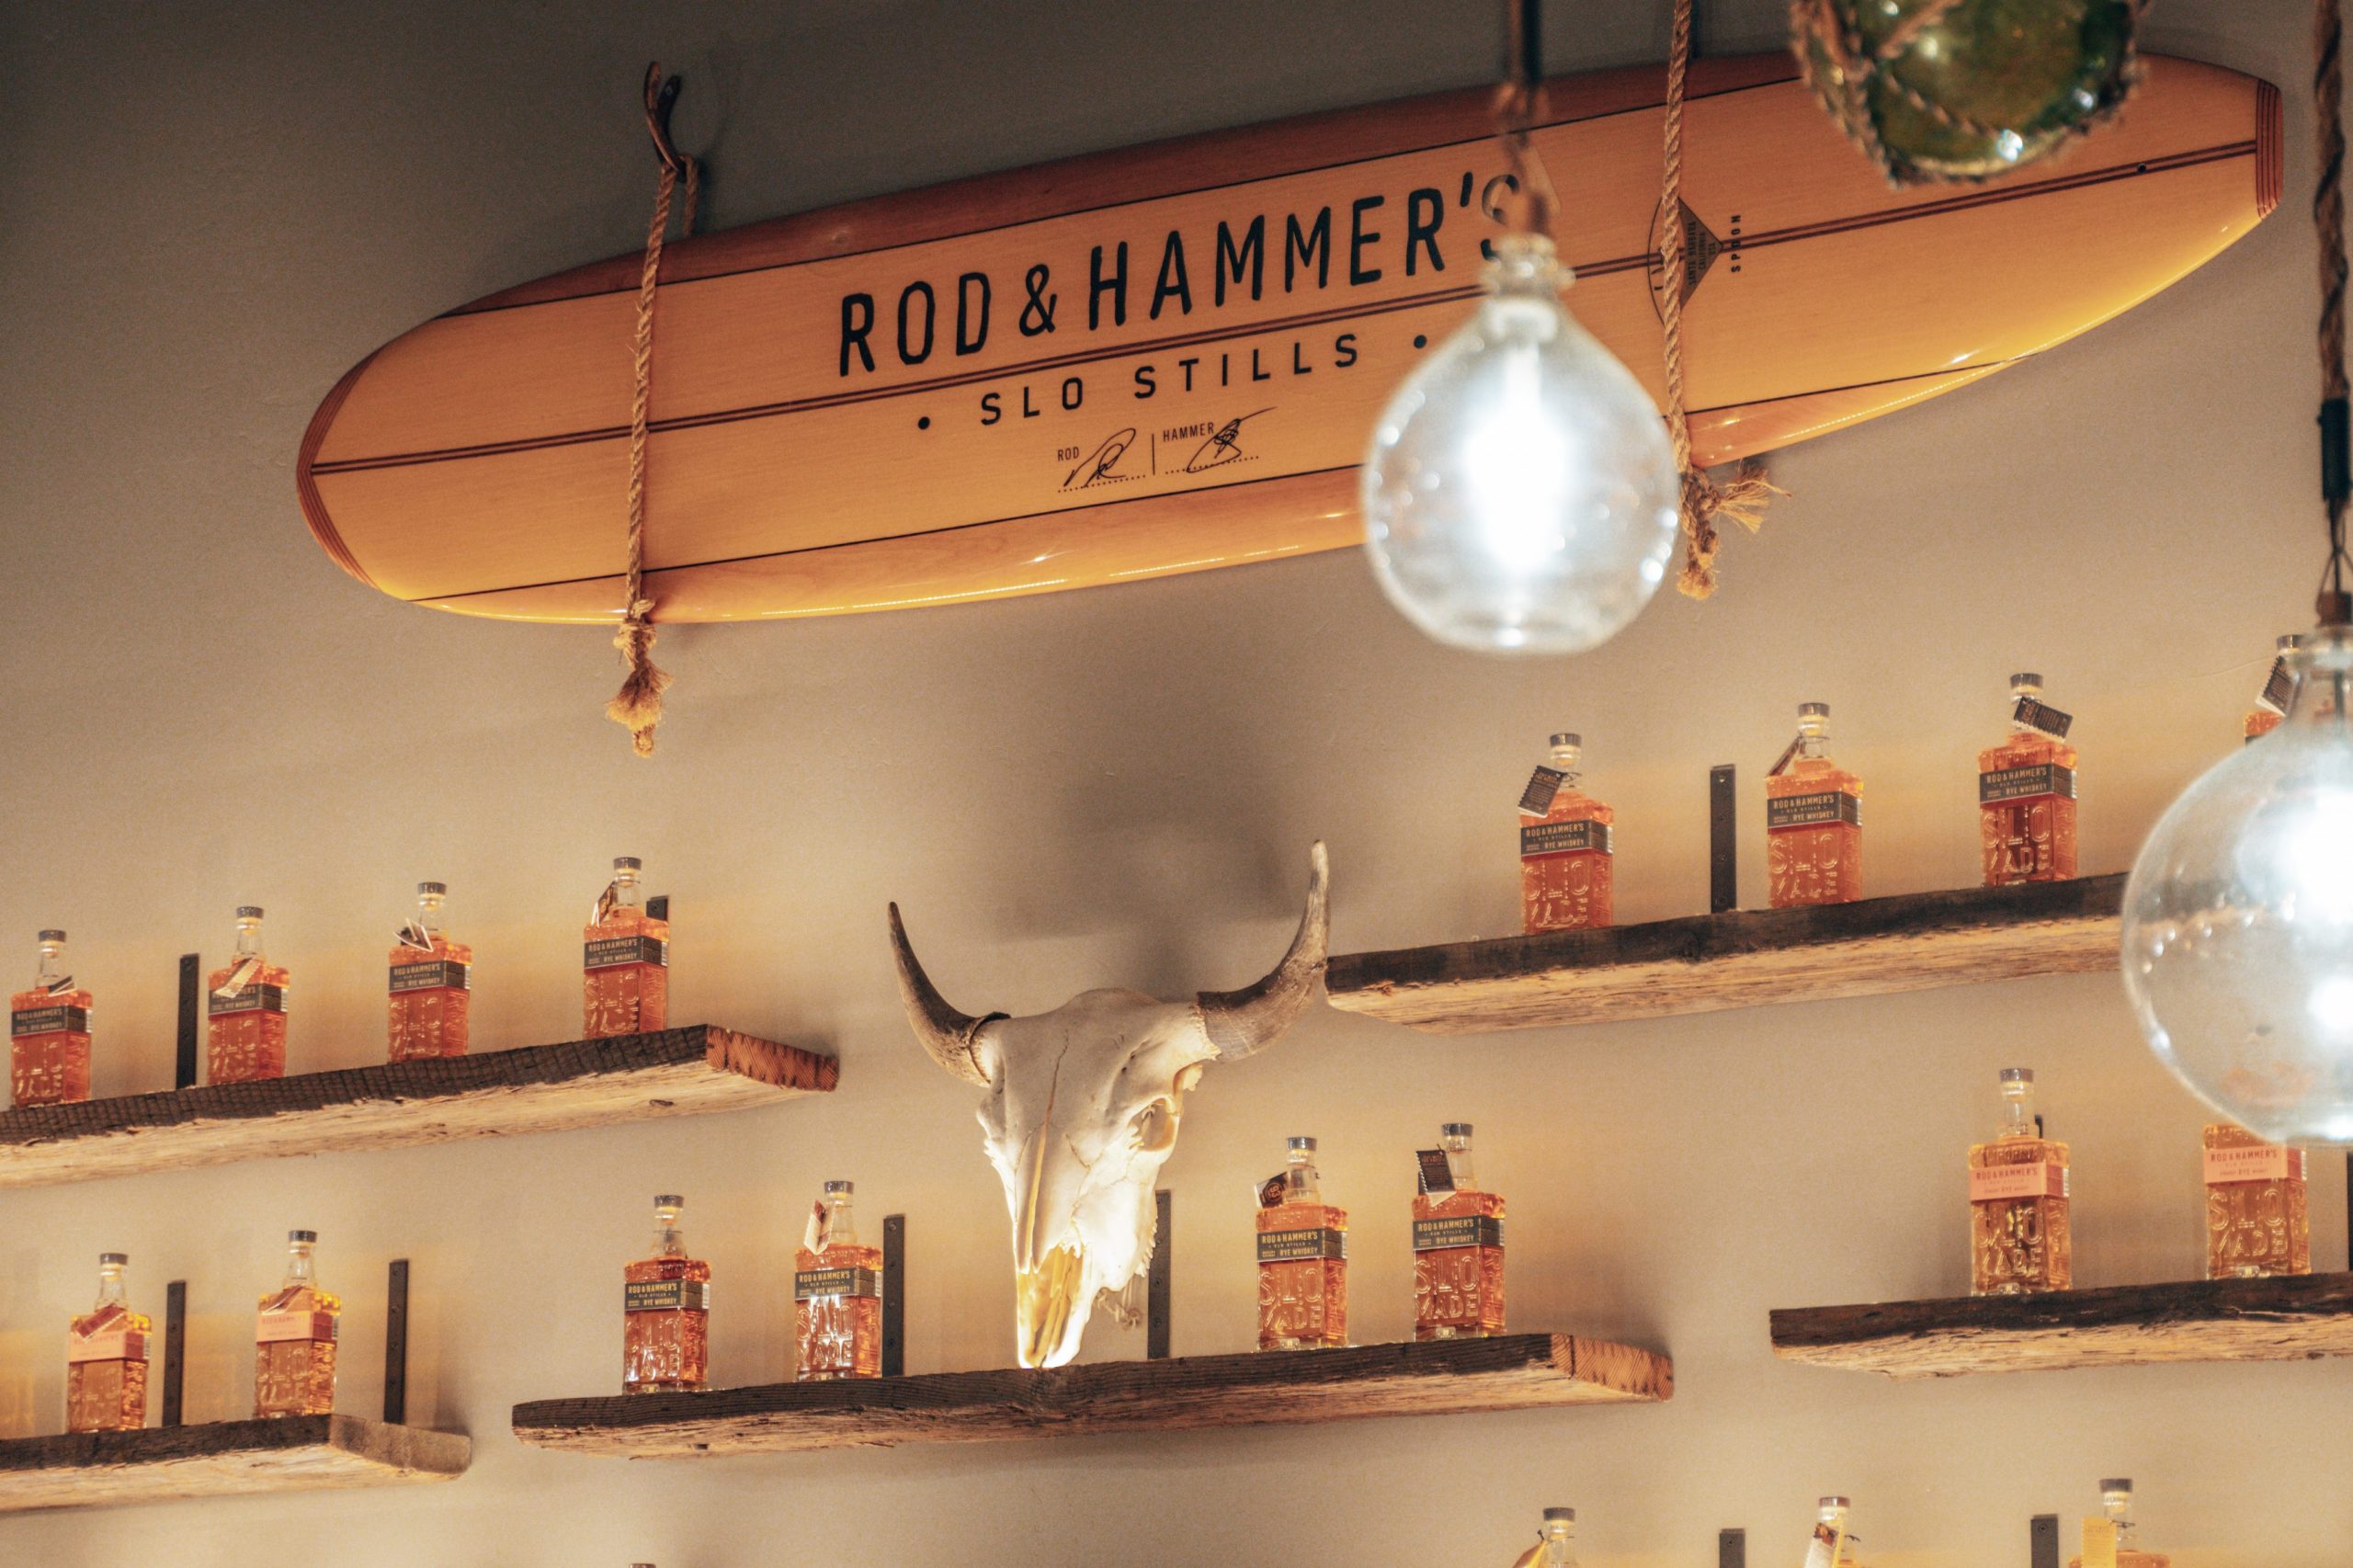 Rod & Hammer's SLO Stills Tasting Room - San Luis Obispo, California